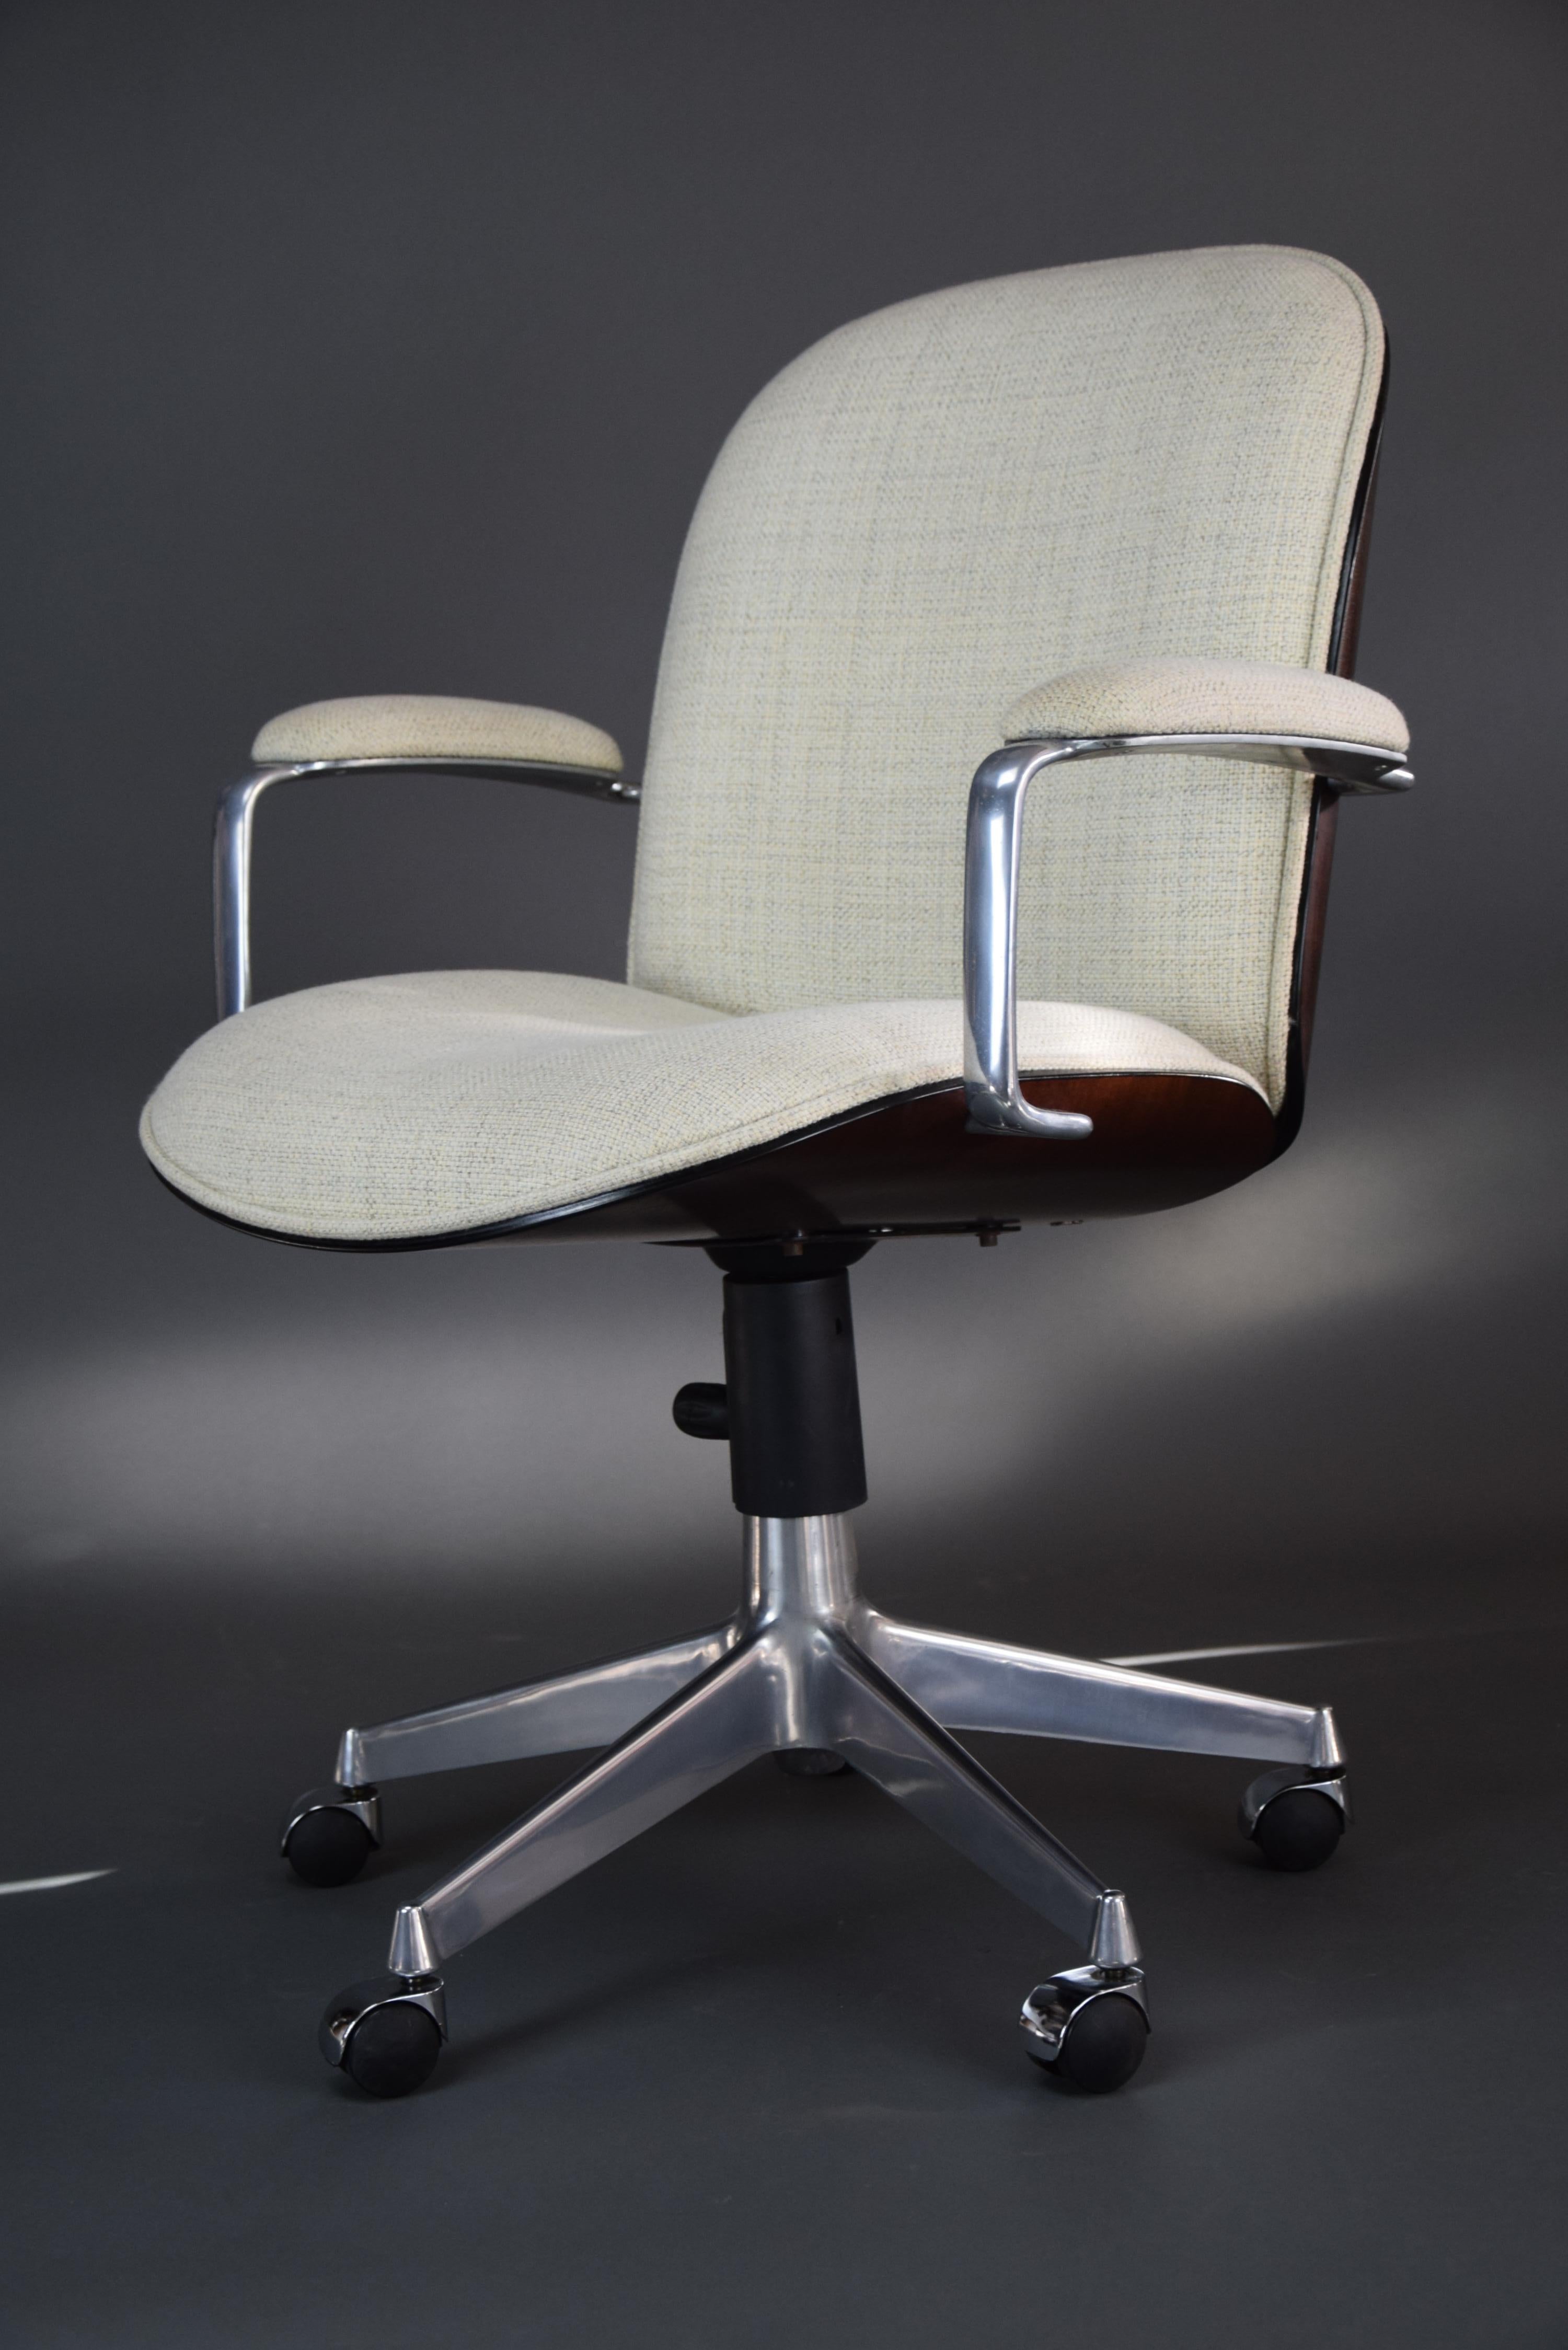 Rehaussez votre espace de bureau avec cette rare chaise de bureau moderne du milieu du siècle dernier, conçue par le célèbre Ico Parisi pour MIM Rome, en Italie.

Cette chaise n'est pas seulement élégante, elle est aussi une œuvre d'art qui sera le